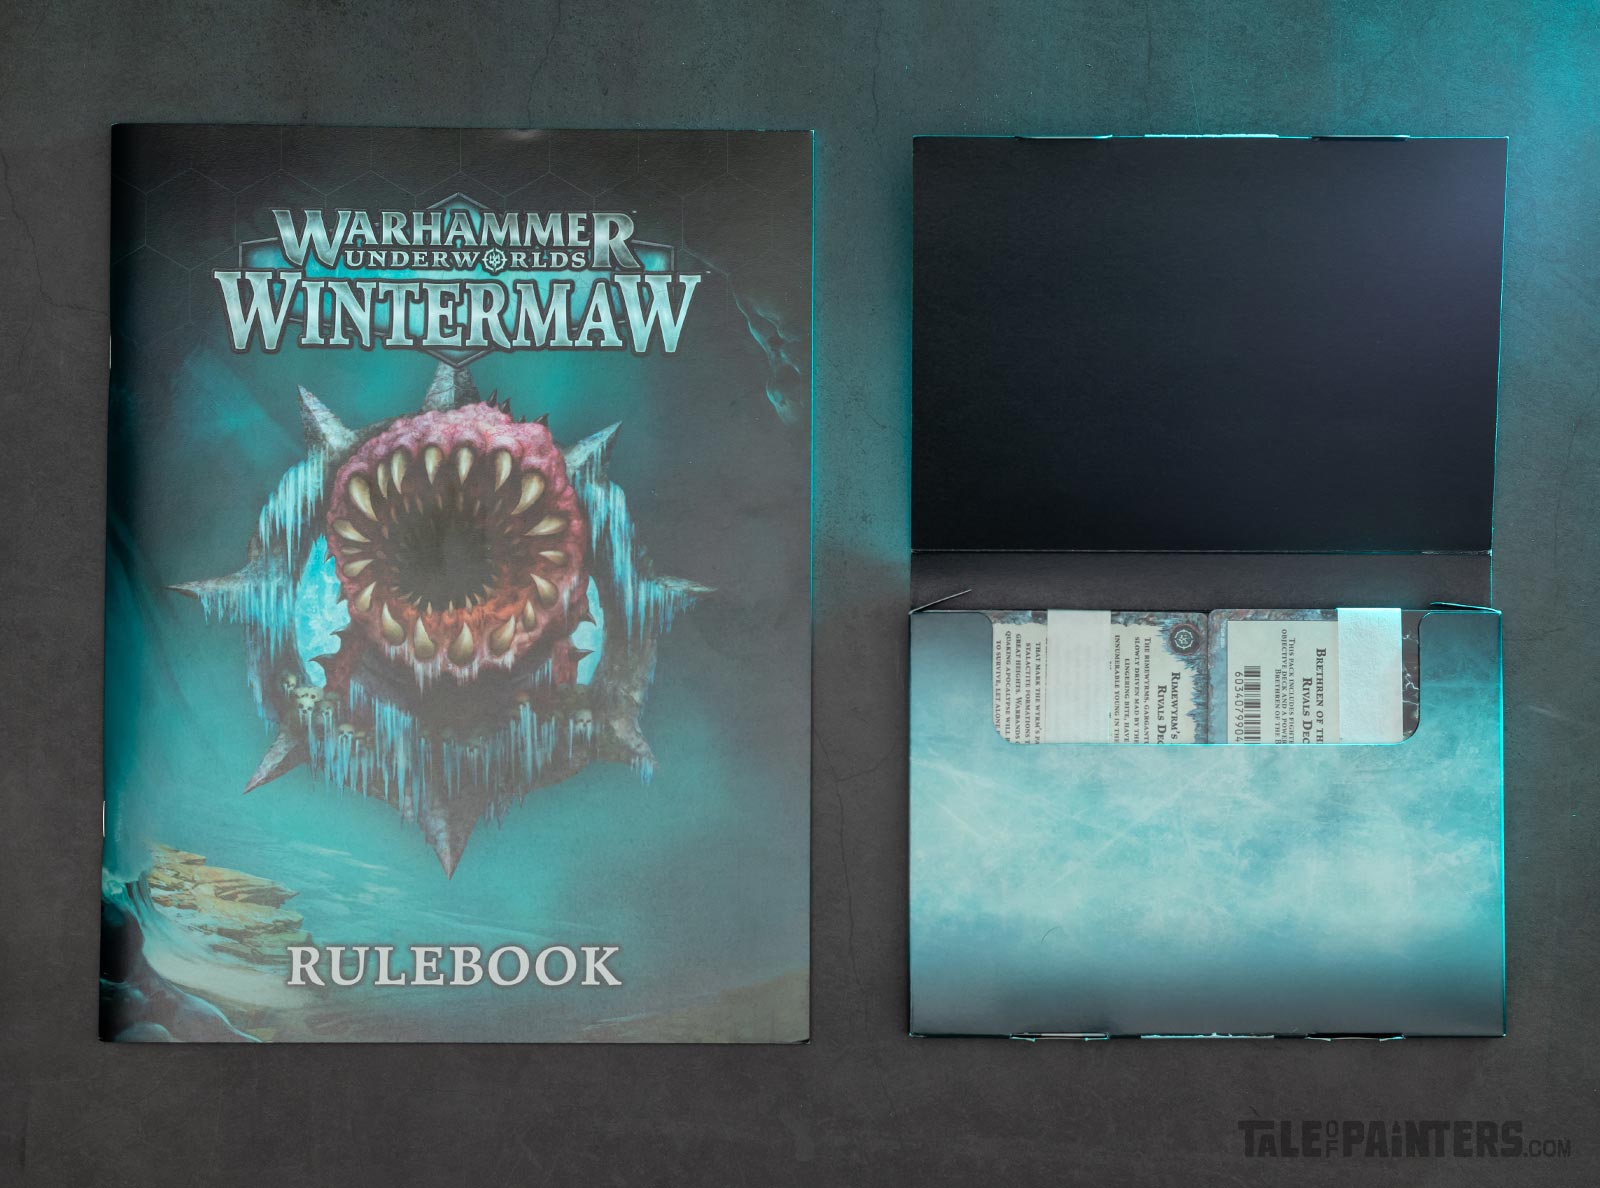 Rulebook and decks from Warhammer Underworlds Wintermaw